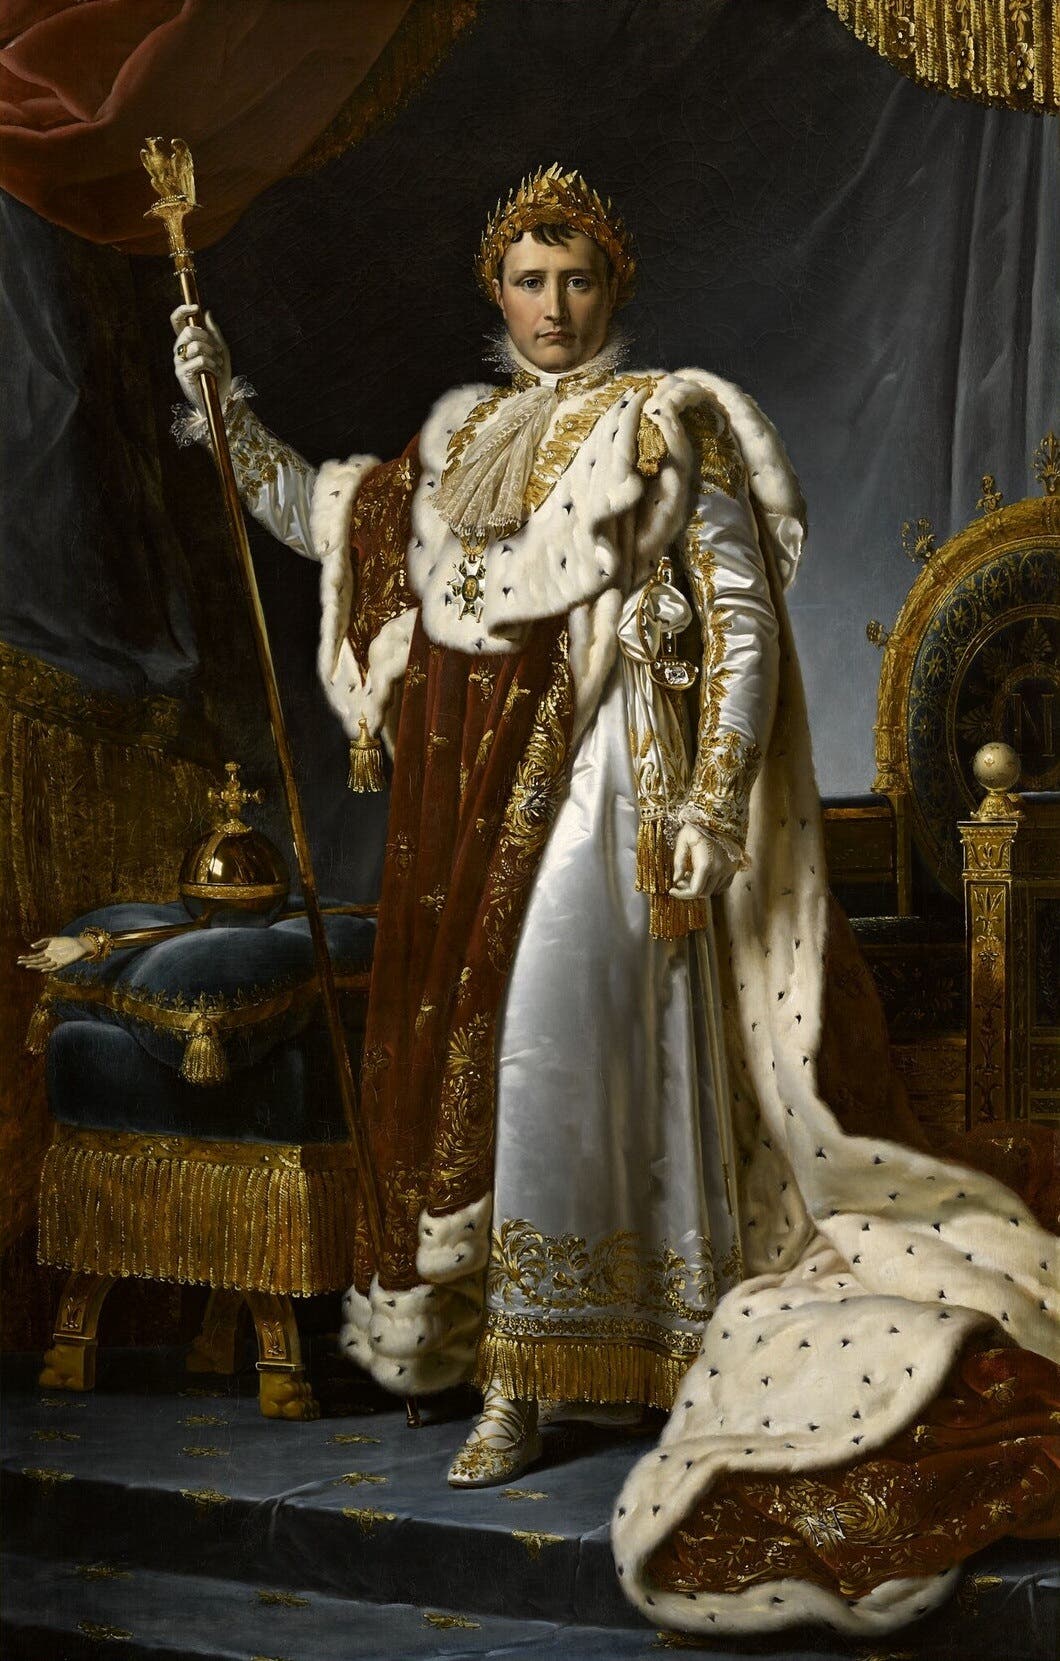 لوحة تجسد الإمبراطور الفرنسي نابليون بونابرت